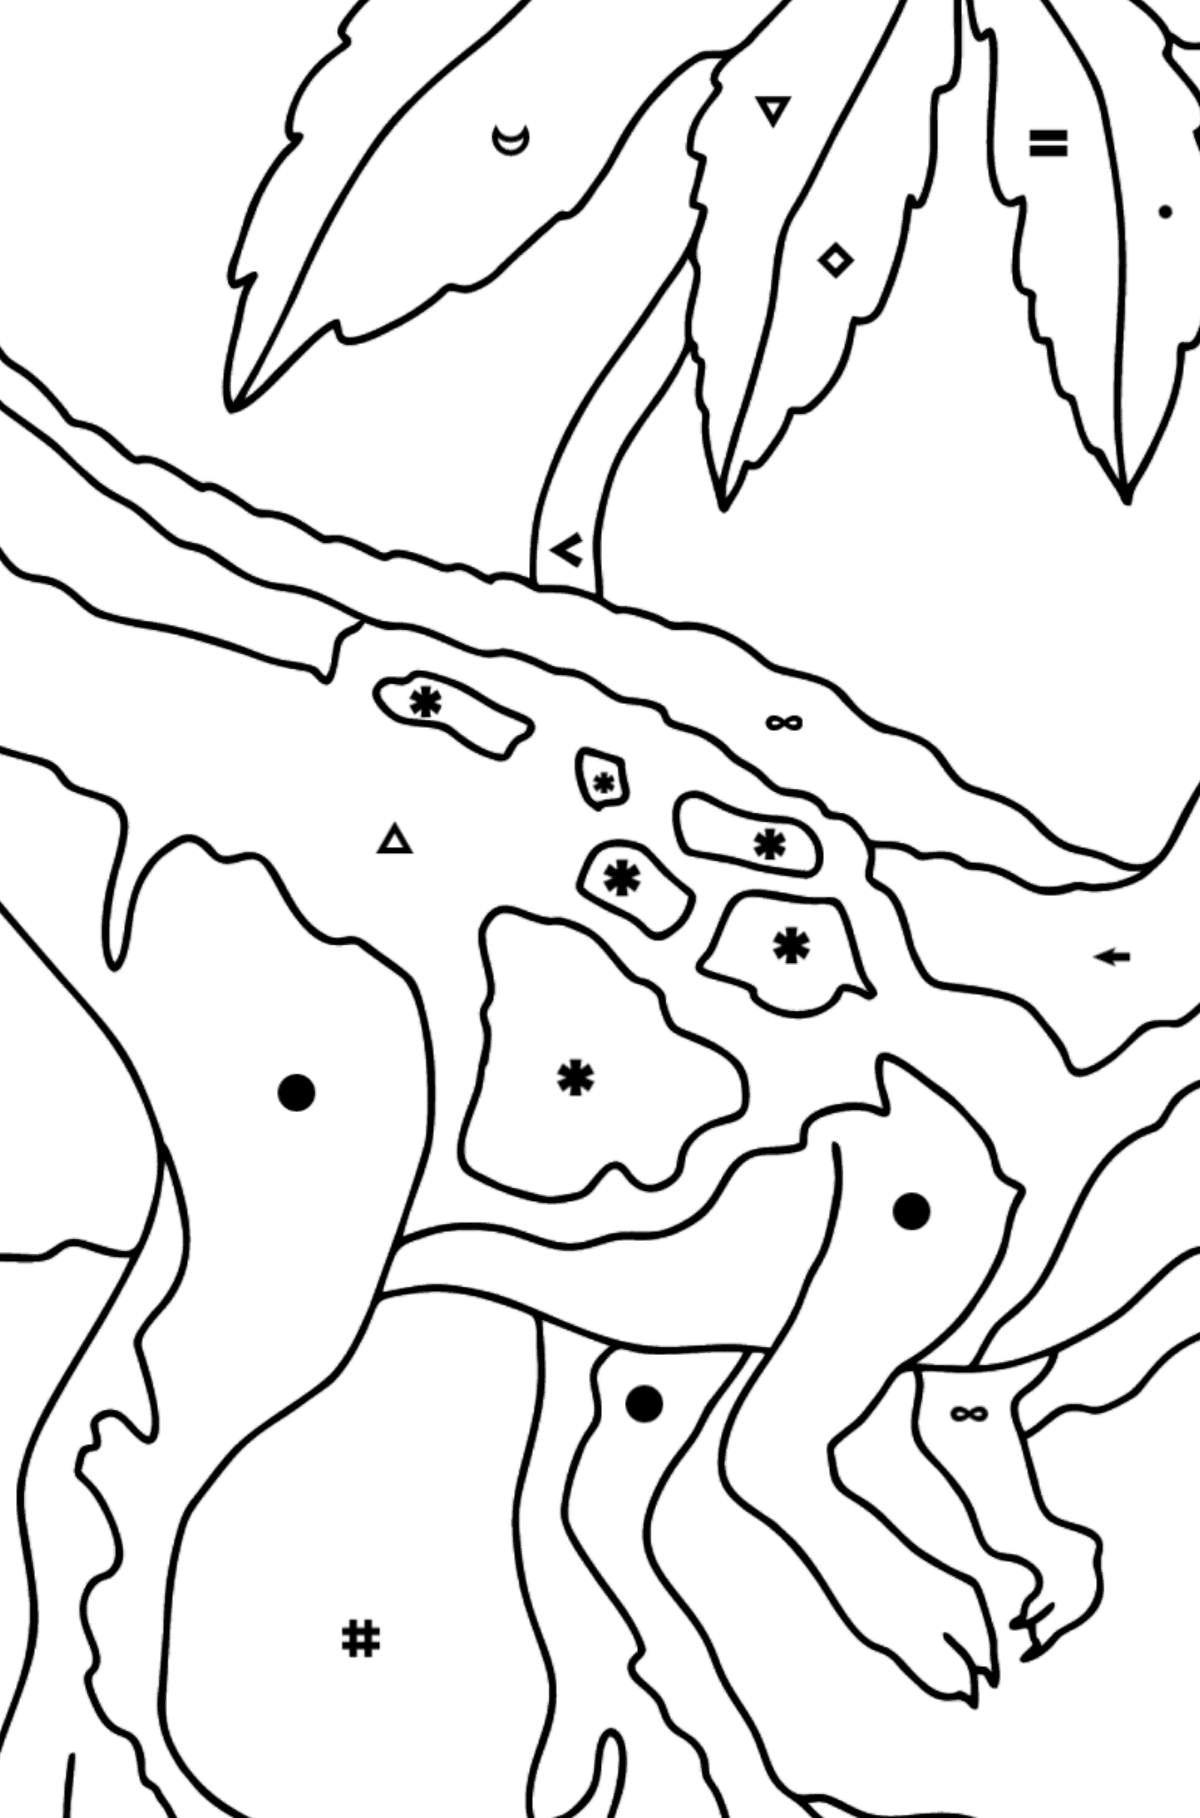 Desenho para colorir do predador tiranossauro (difícil) - Colorir por Símbolos para Crianças